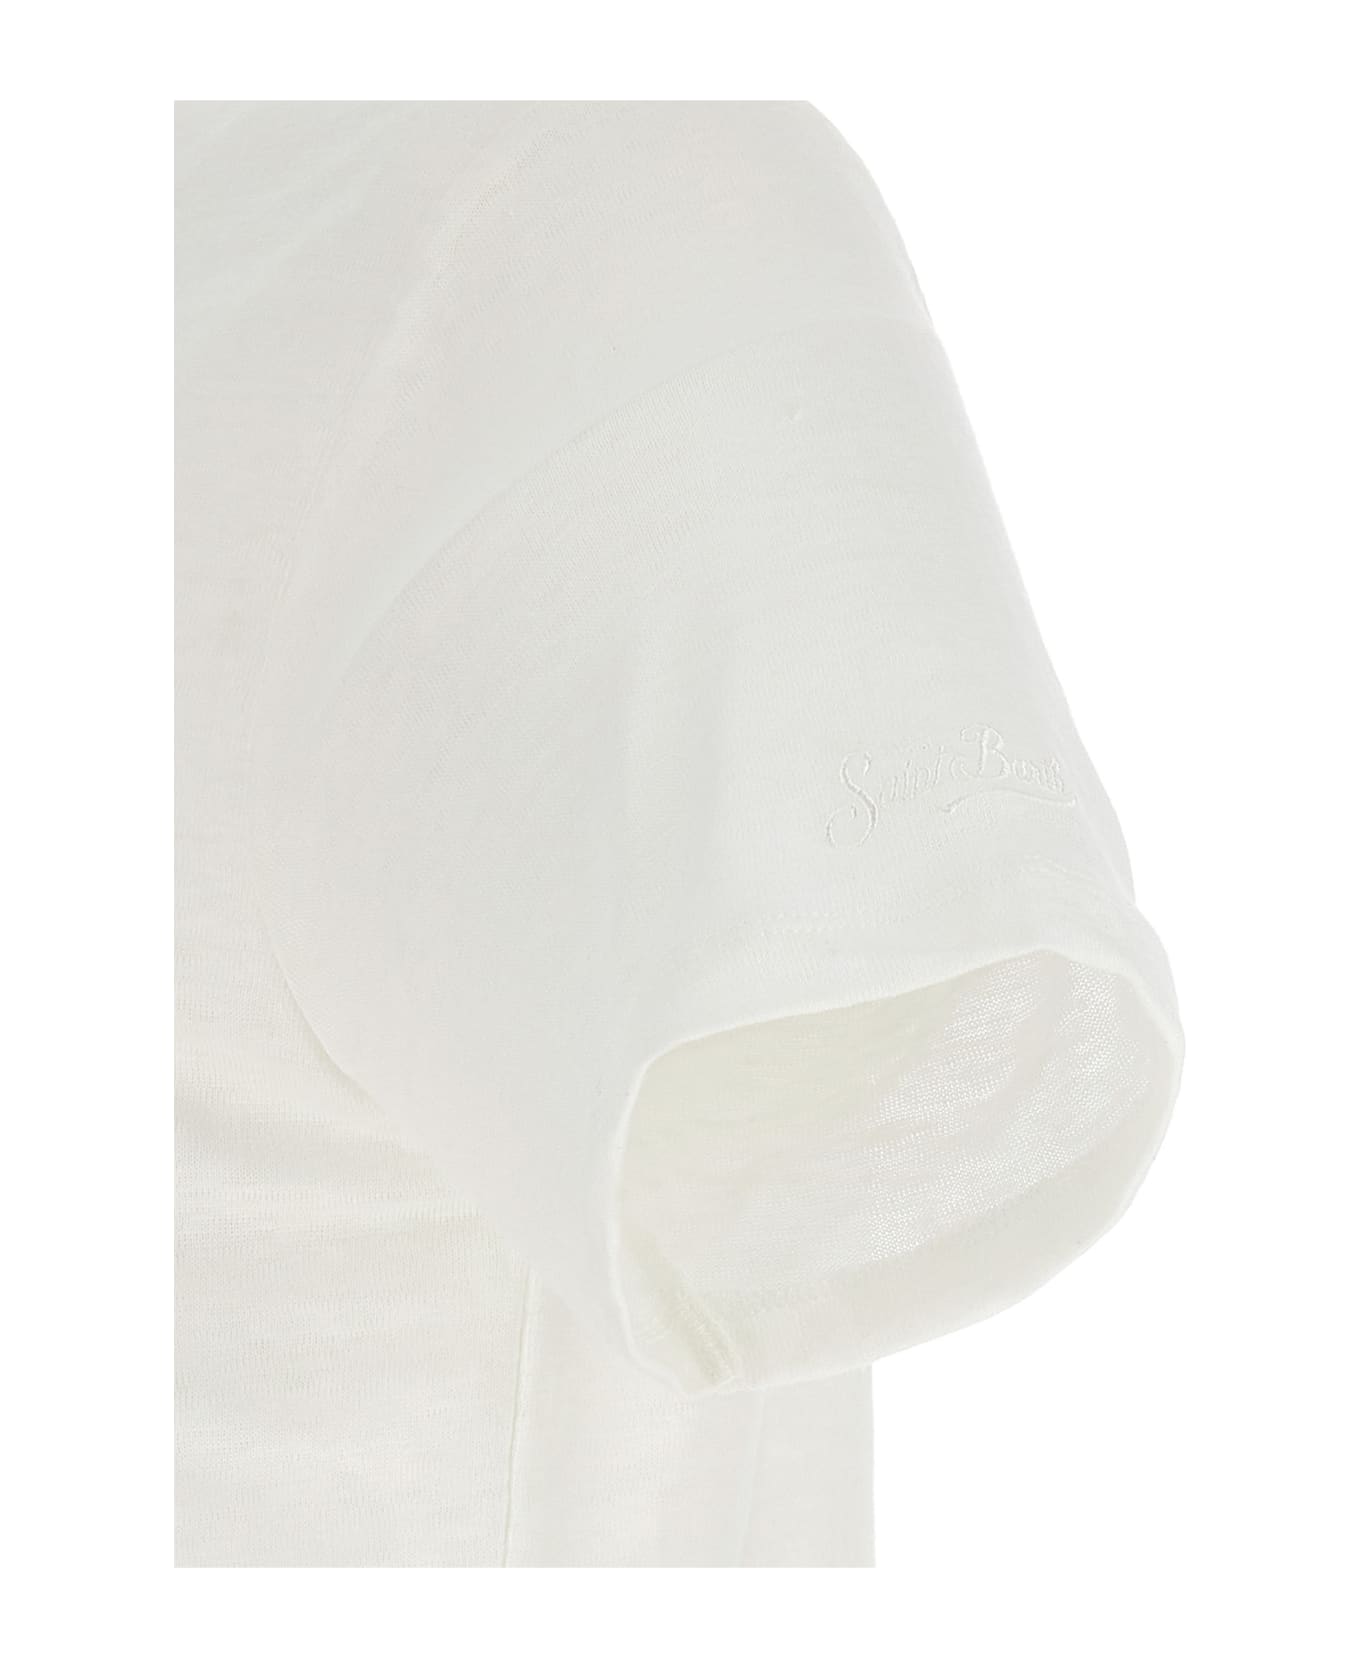 MC2 Saint Barth 'ecstasea' T-shirt - White シャツ